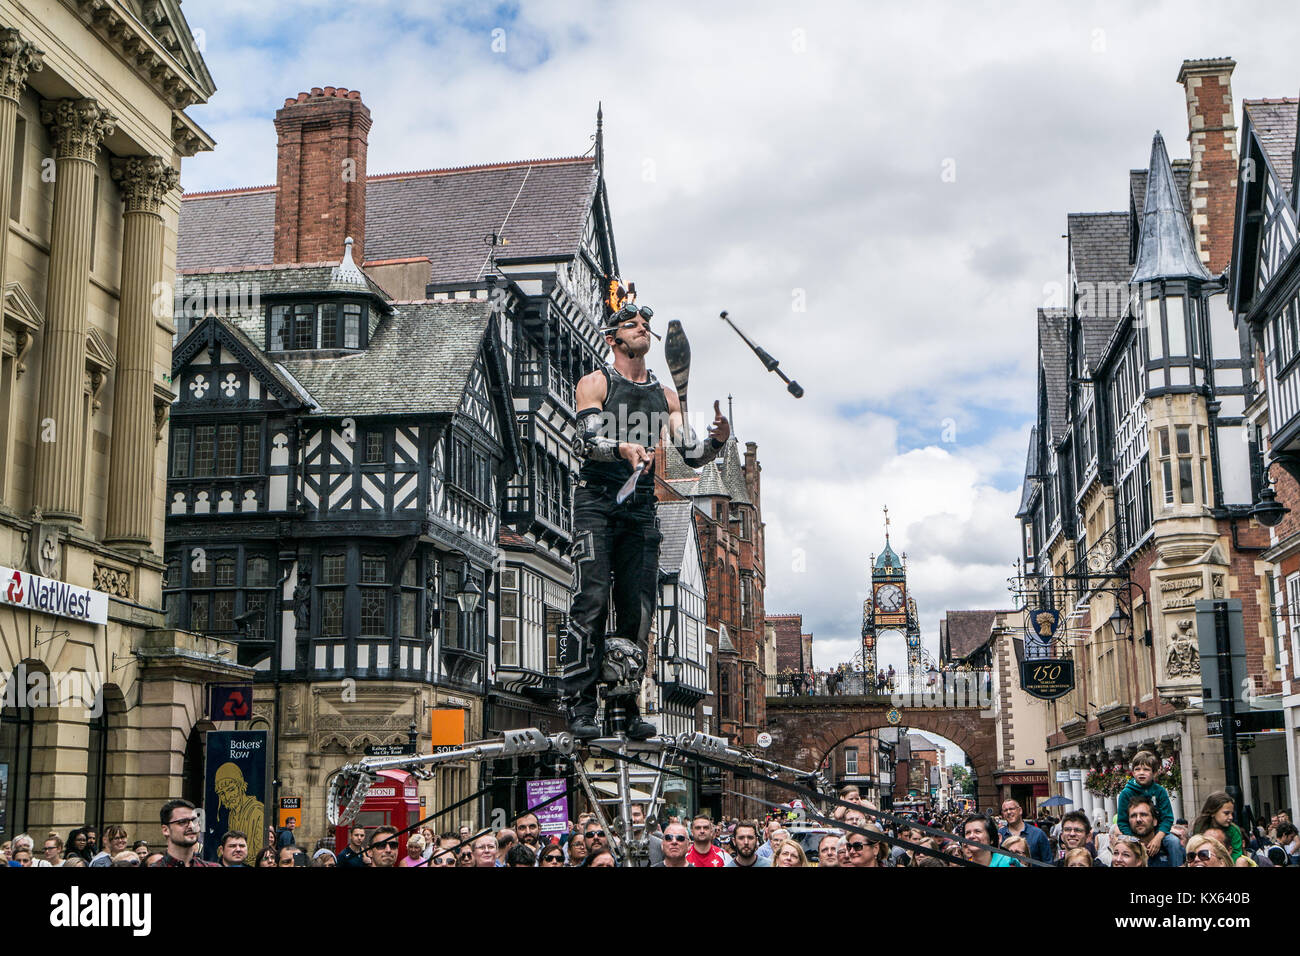 Street Performer jonglieren mit verbundenen Augen in Chester, England, UK. Stockfoto